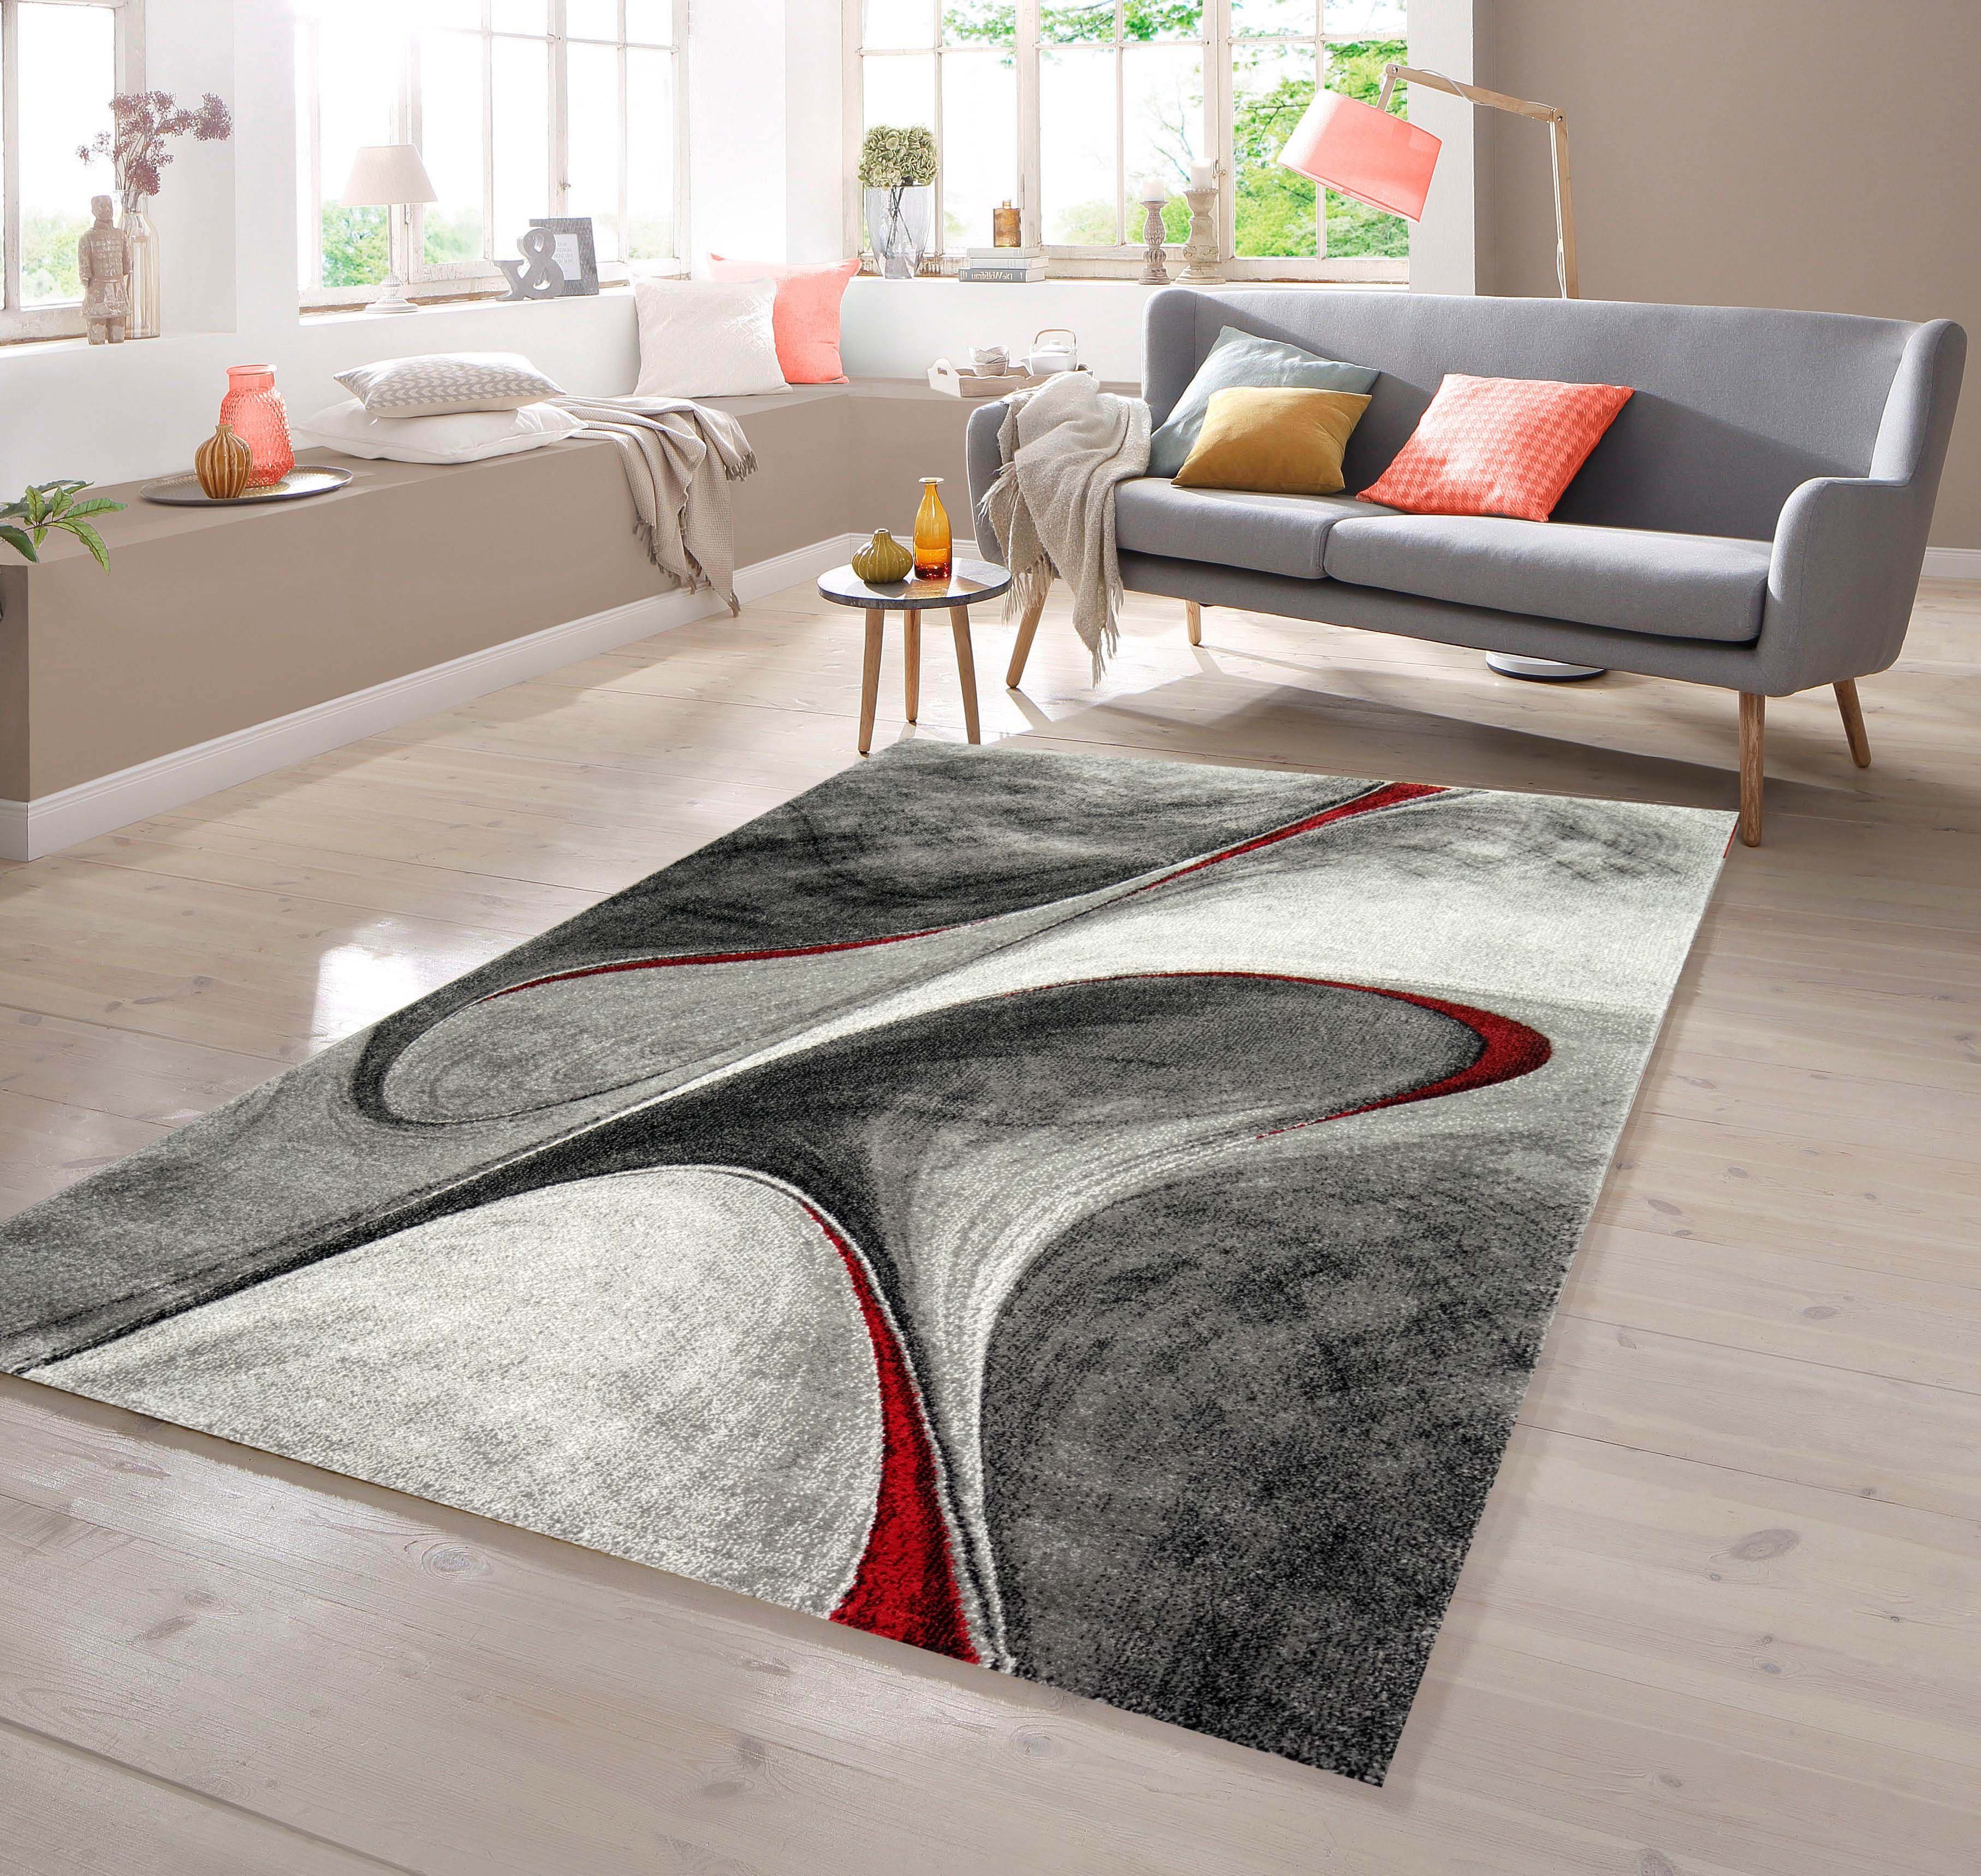 Teppich rot, in grau Teppich rechteckig TeppichHome24, Designer Teppich